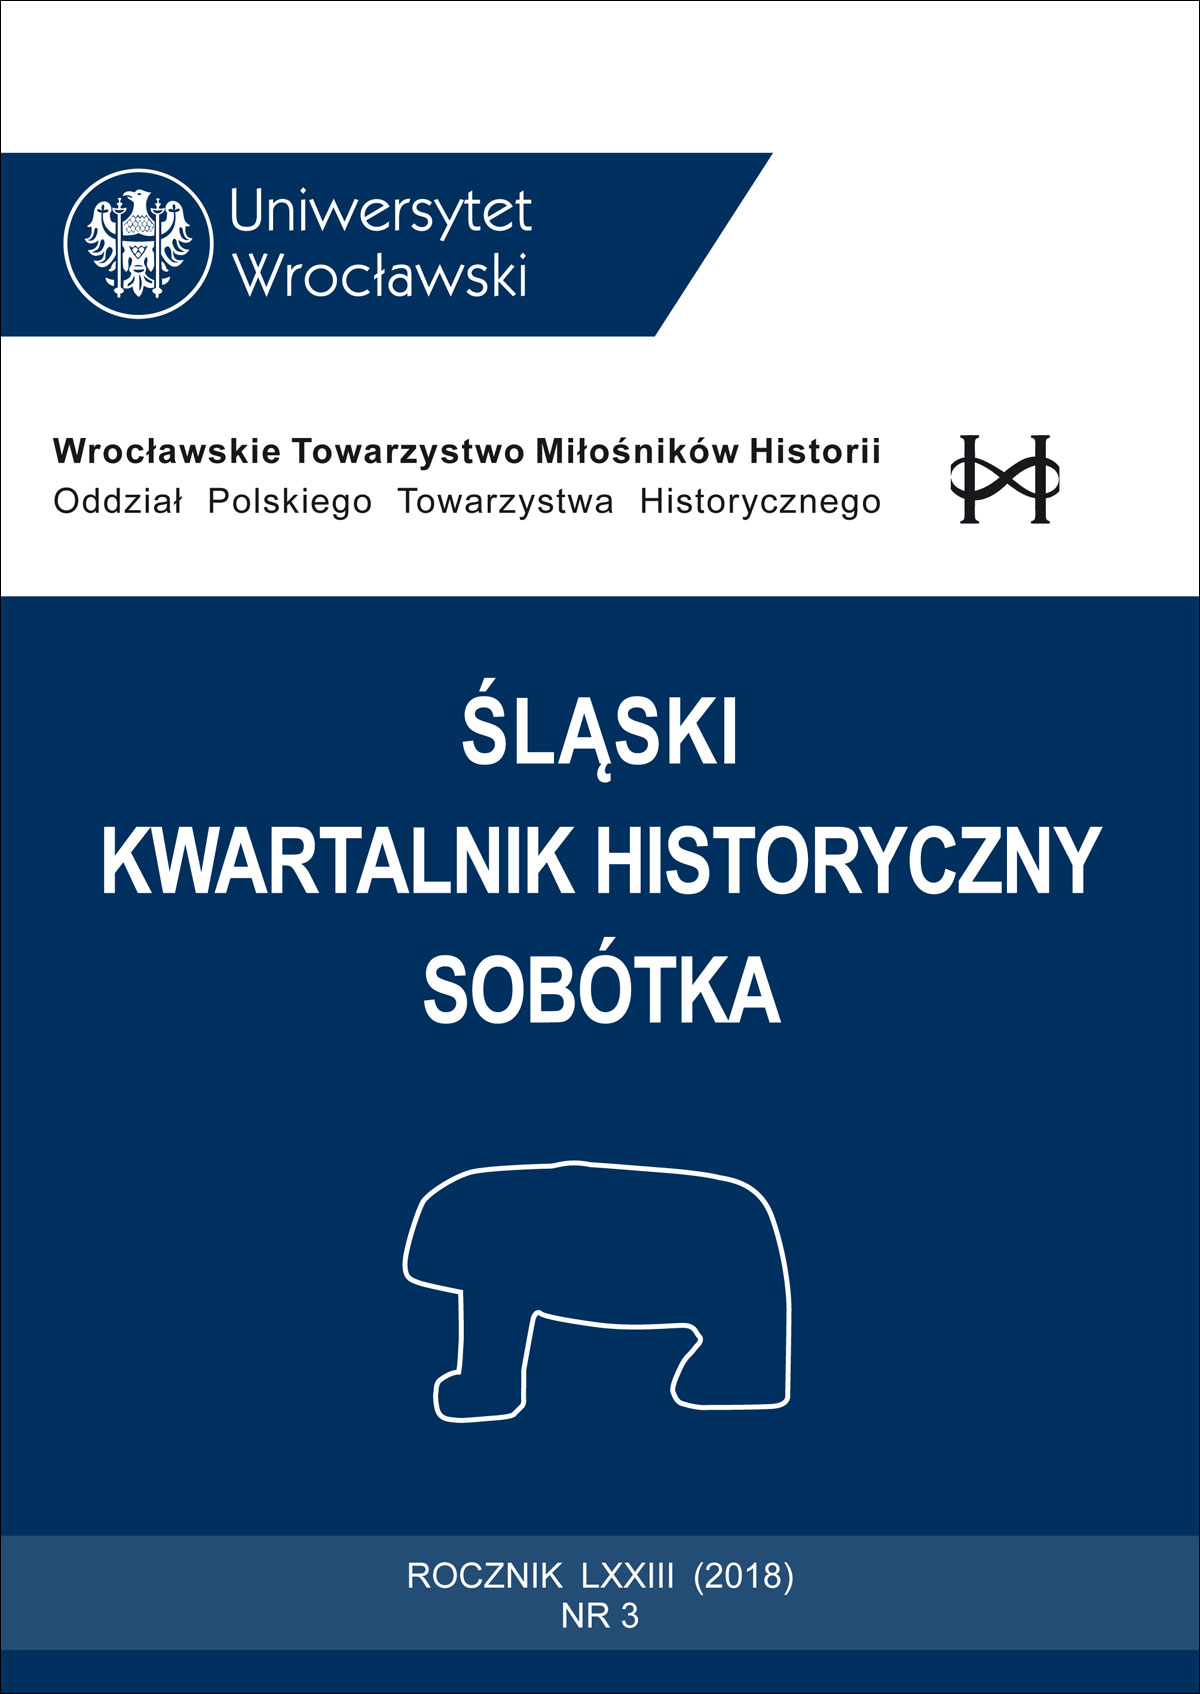 Periodyki jako źródło historyczne do dziejów kultury na Śląsku w okresie międzywojnia (wybrana problematyka)